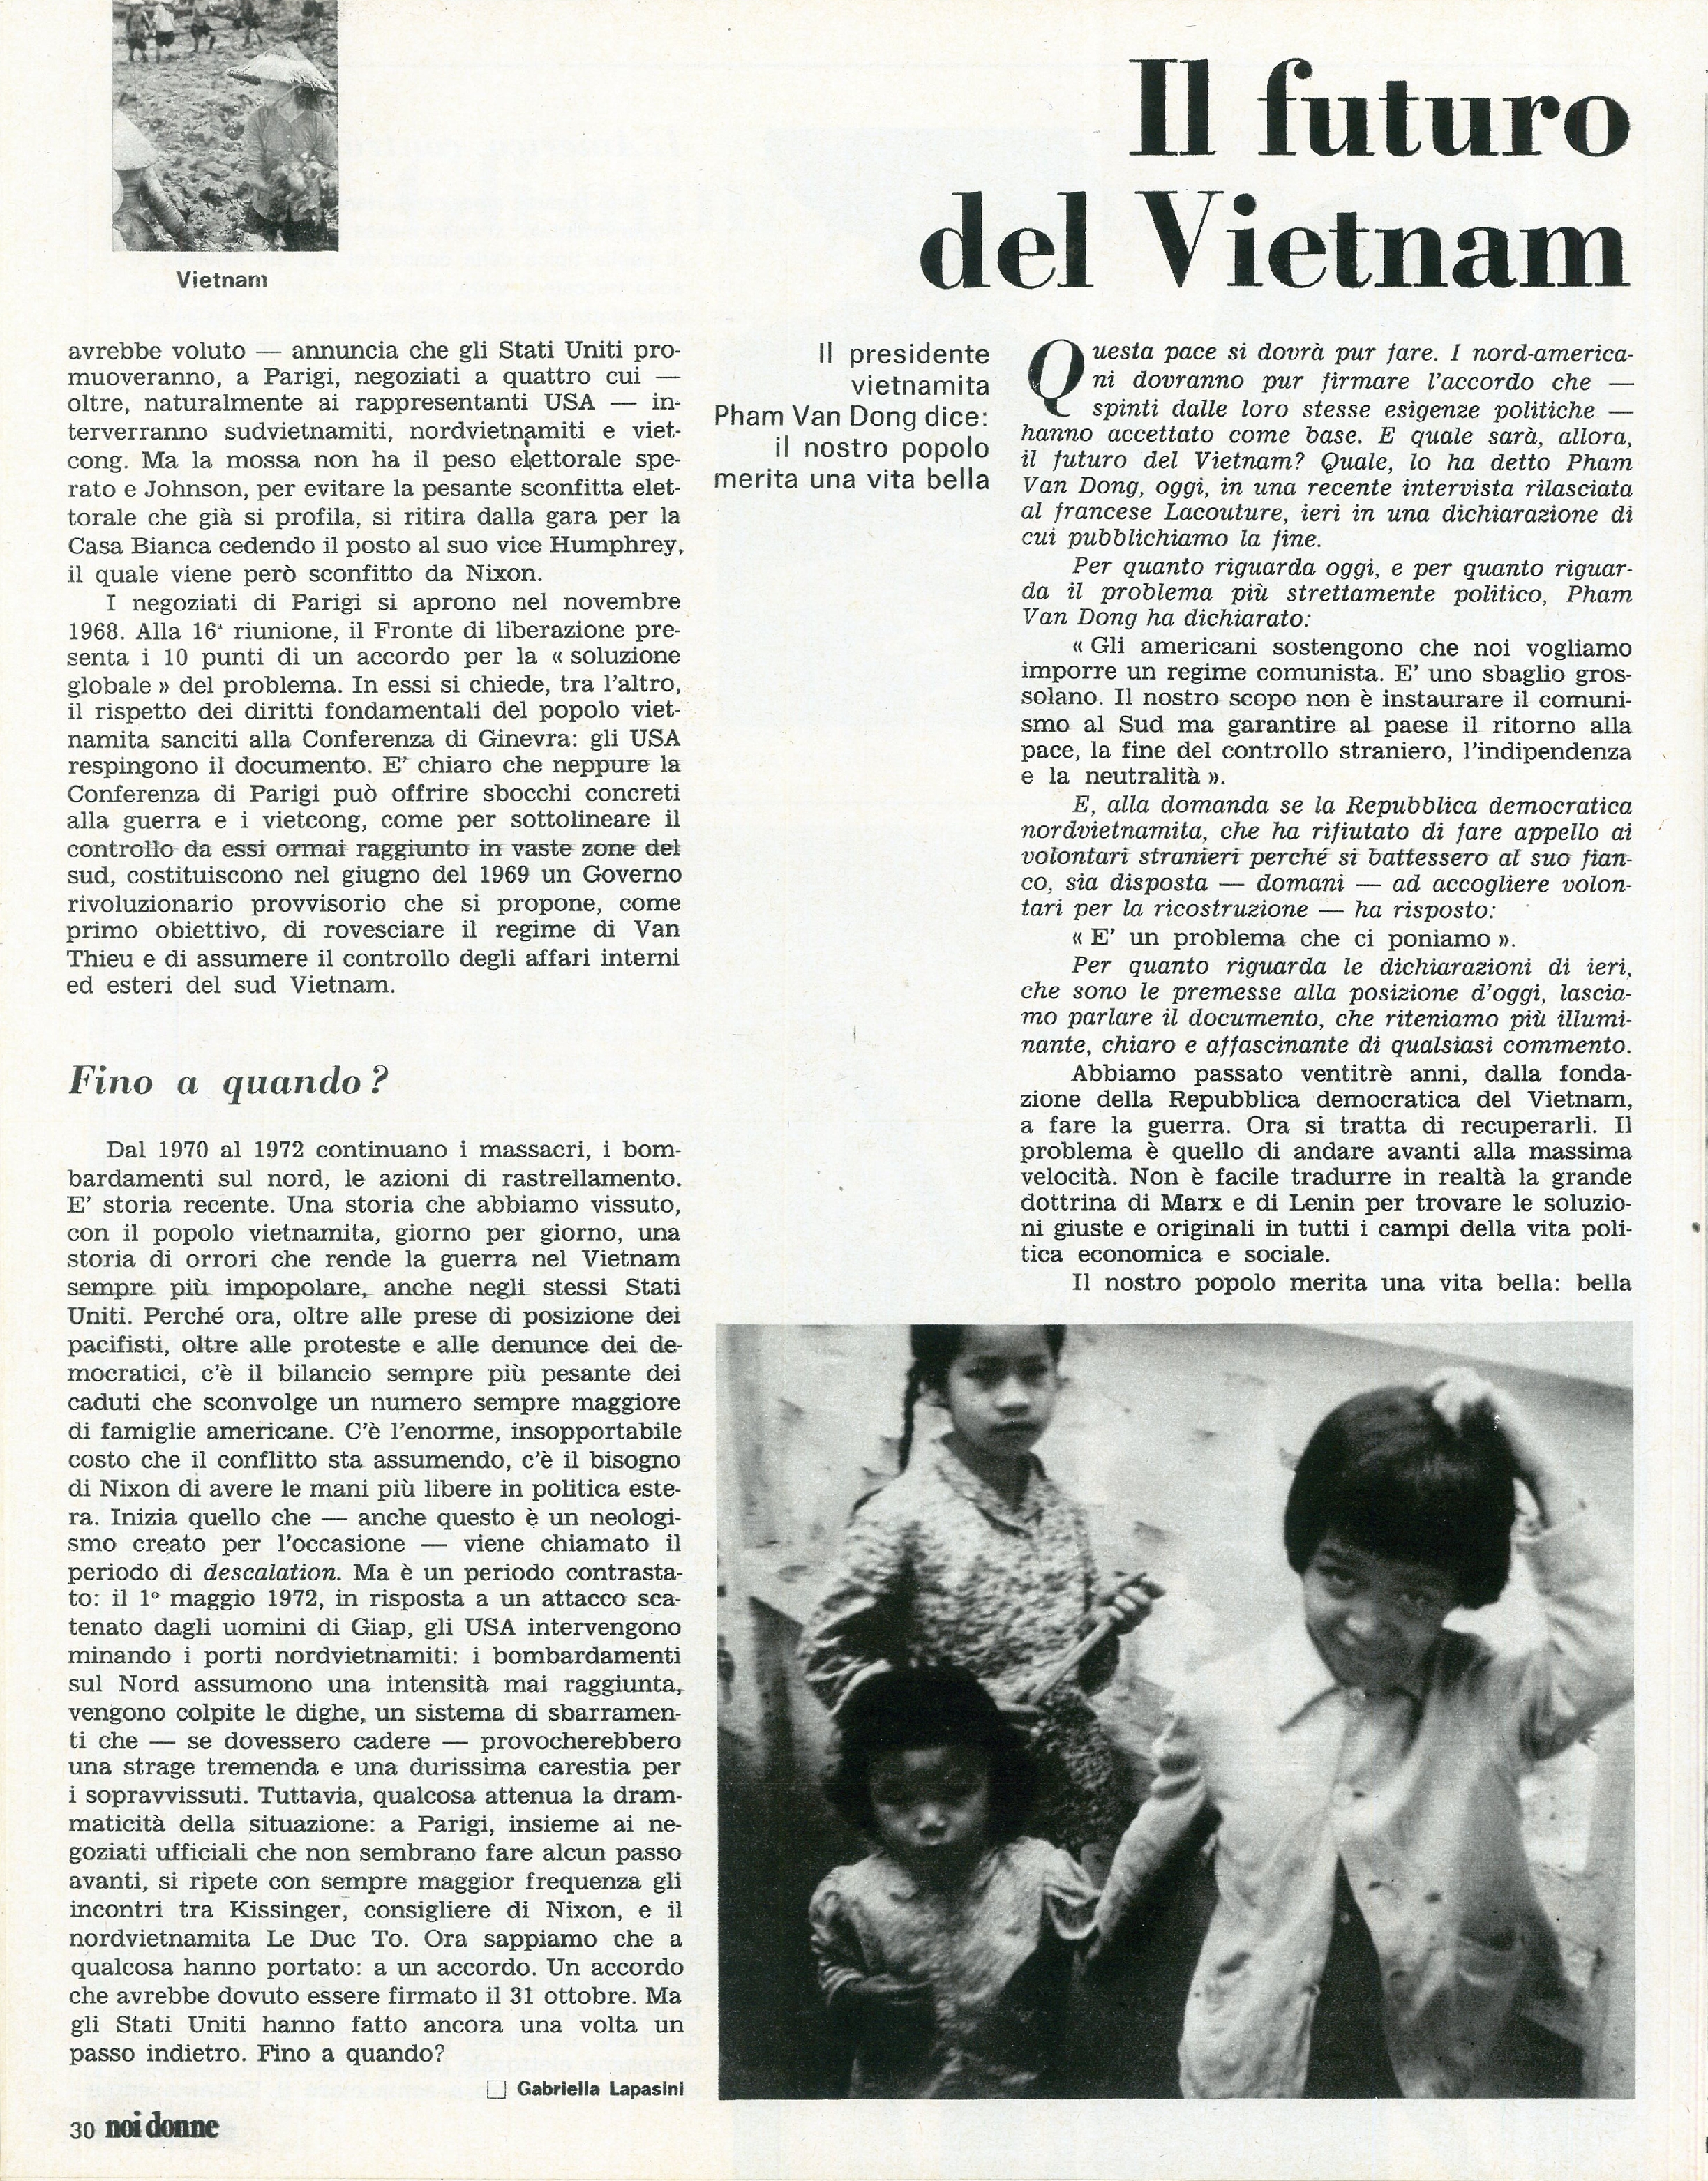 Foto: Tutto il mondo con il Vietnam